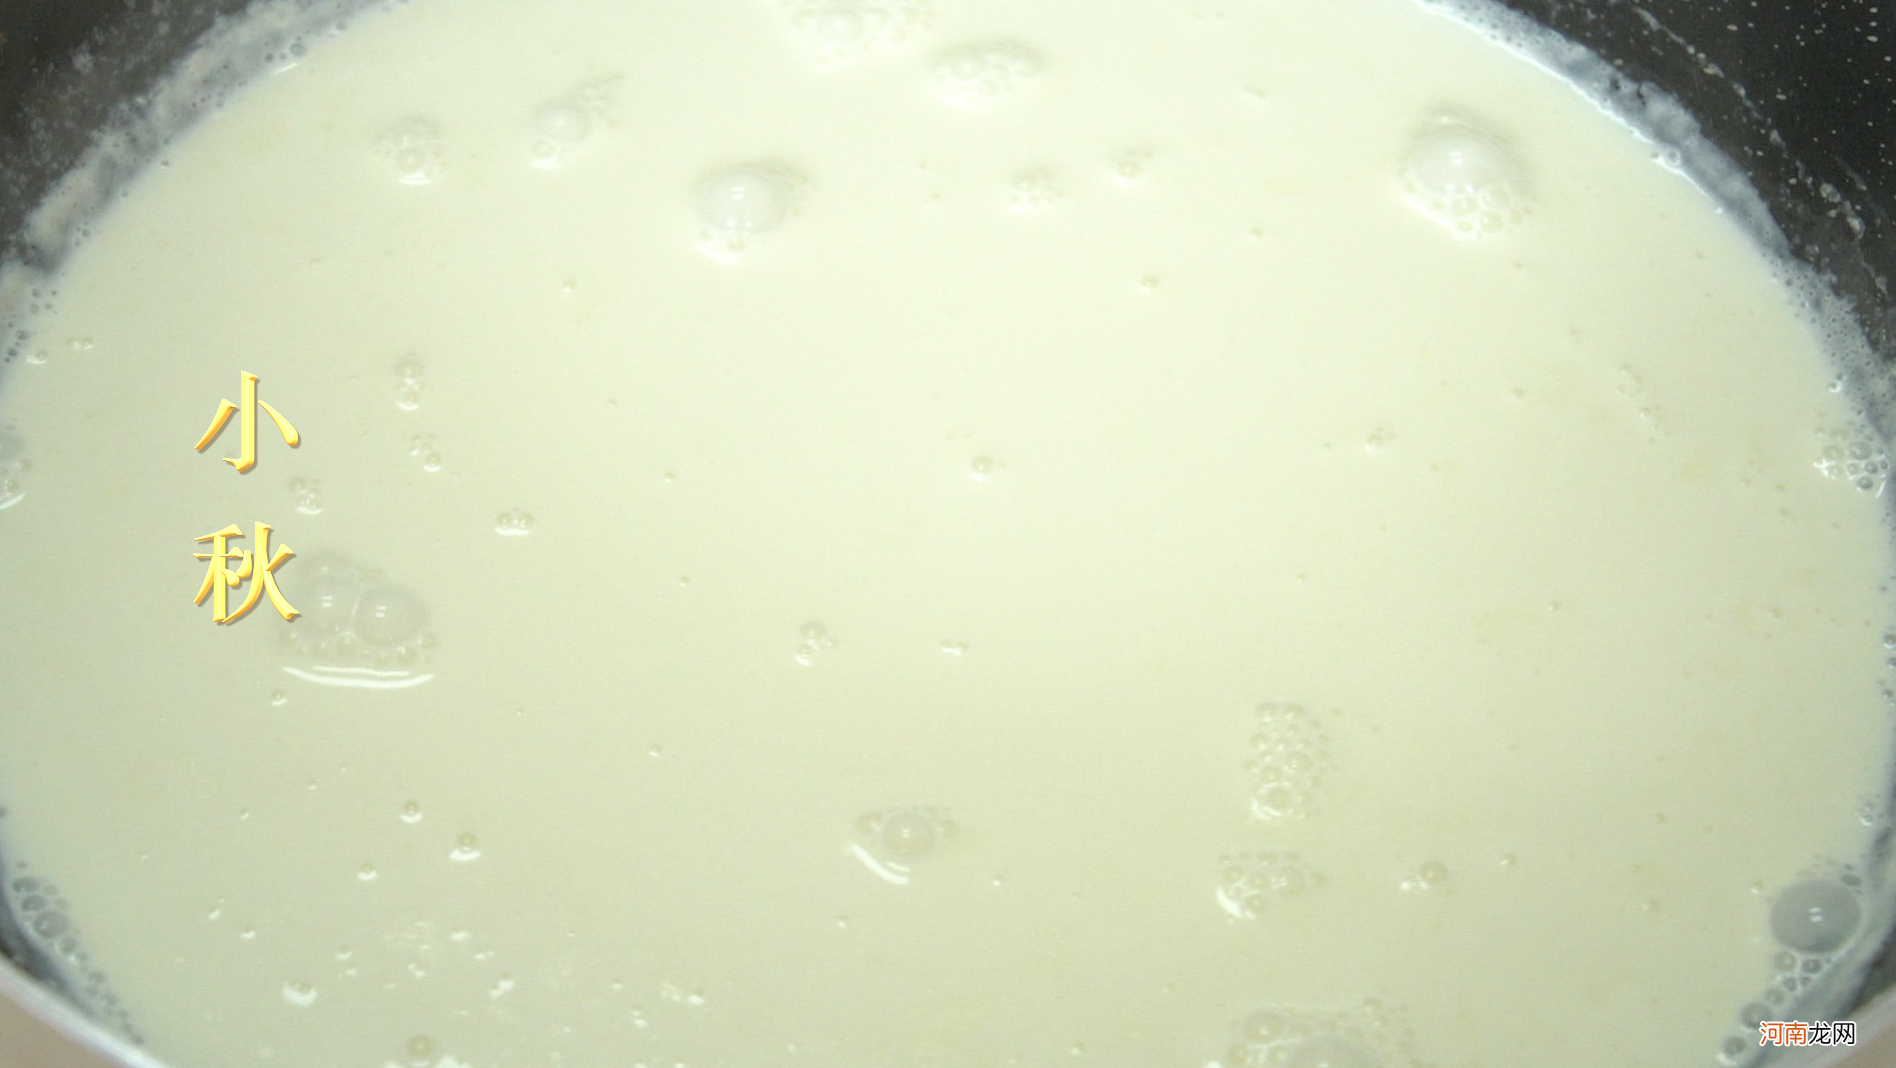 牛奶和鸡蛋的完美结合 牛奶和鸡蛋的混合